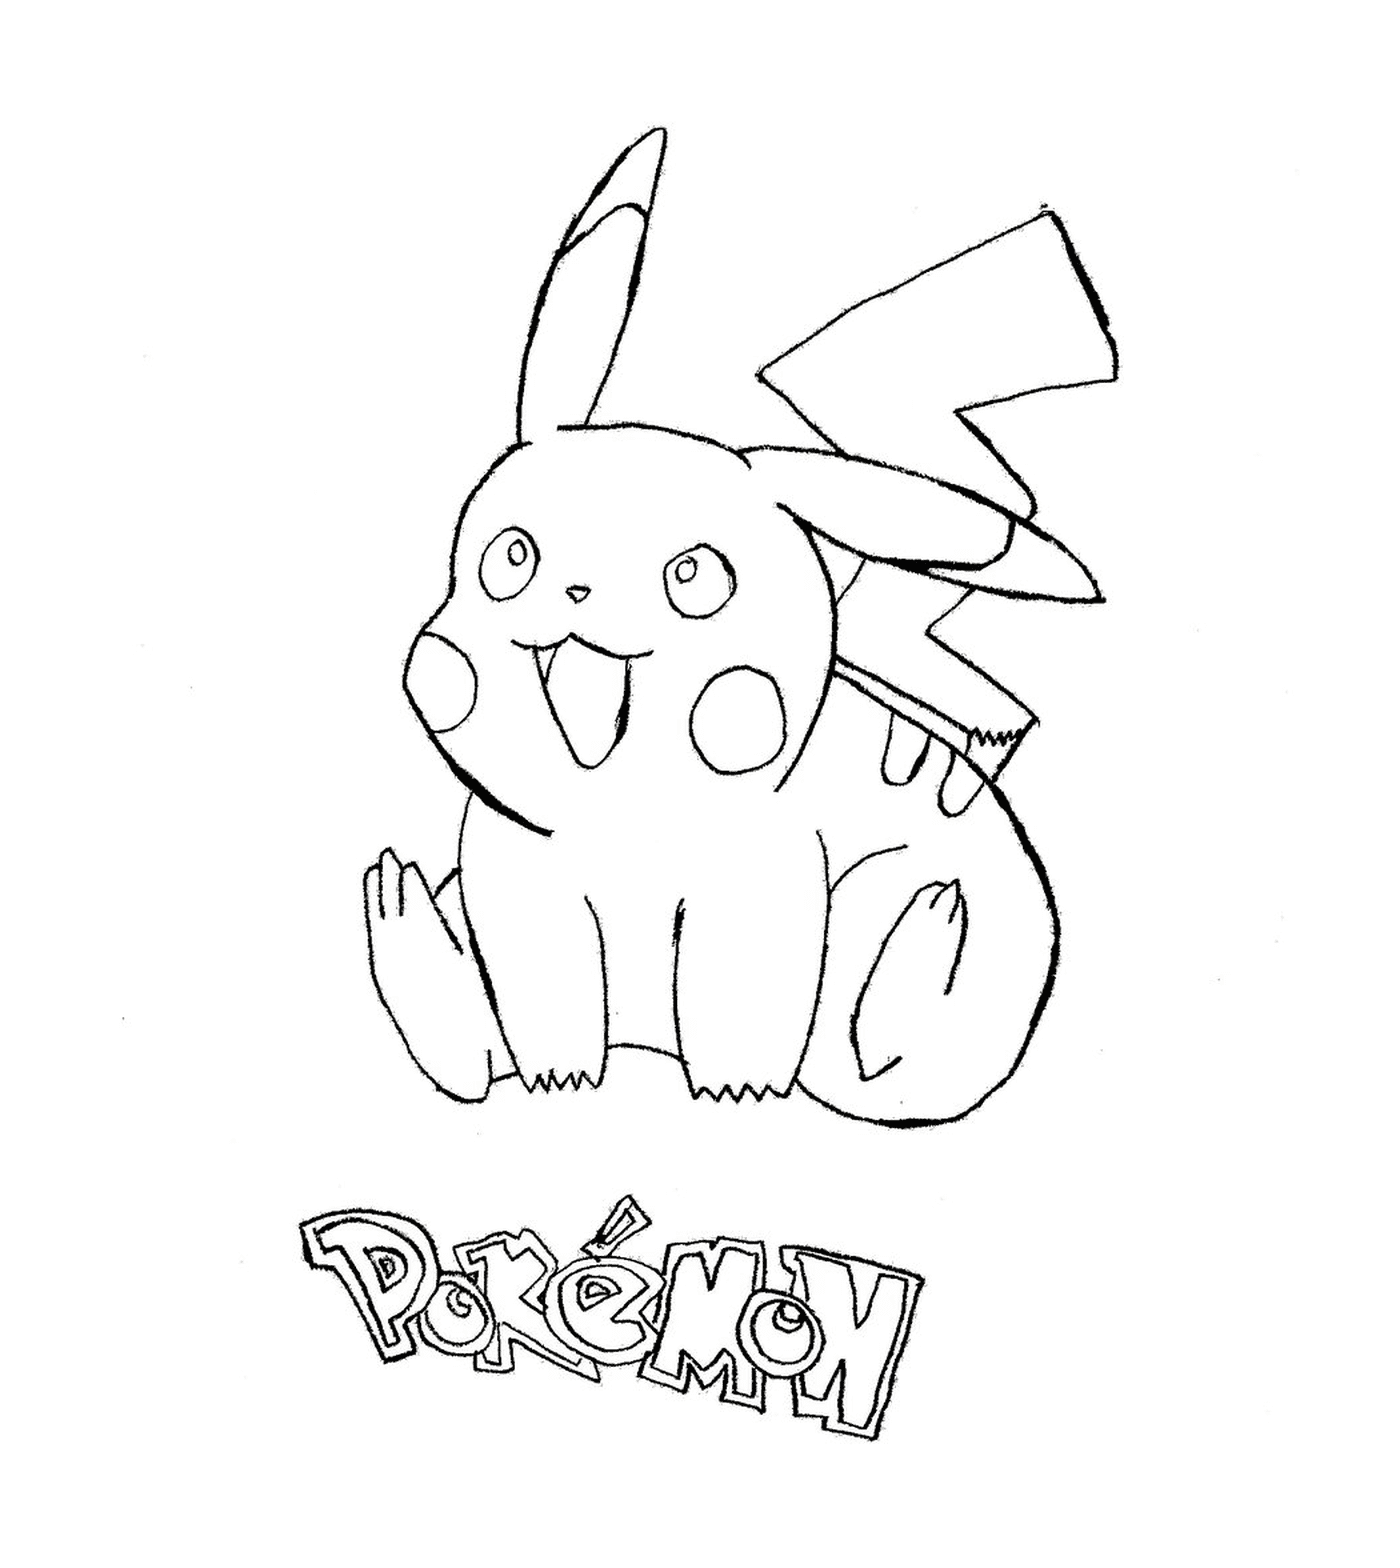  Pikachu, un delizioso Pokémon 